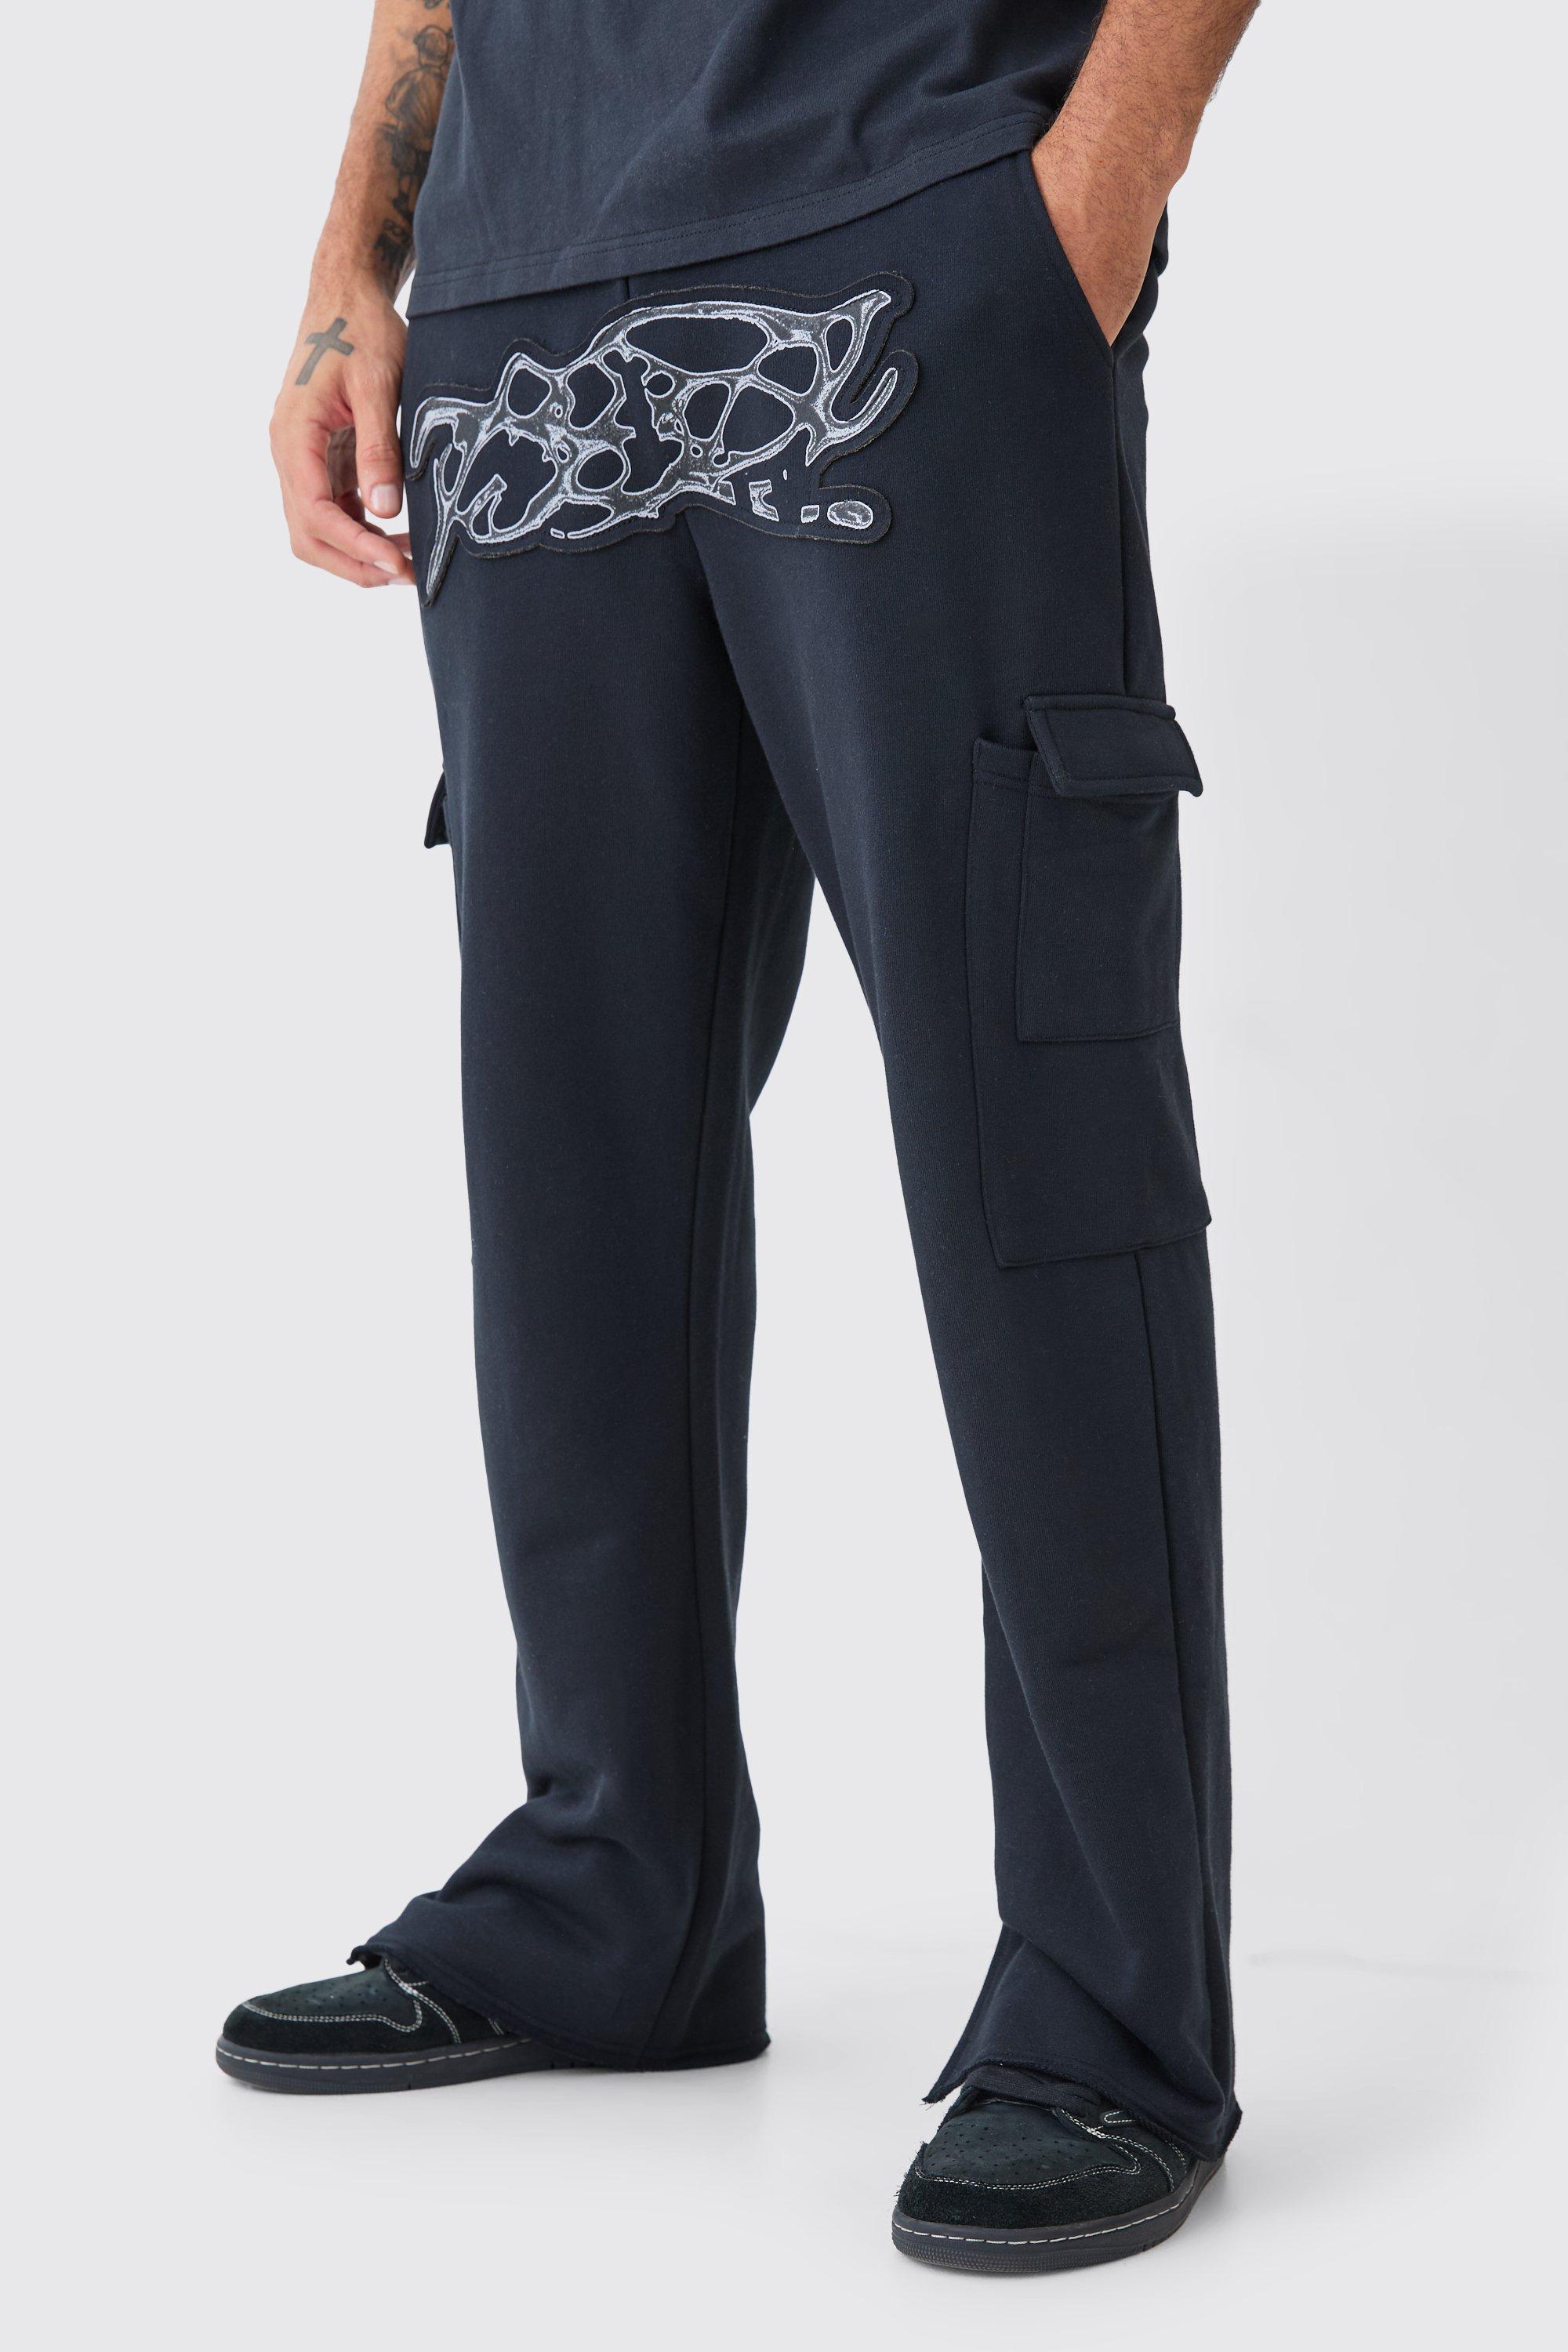 Image of Pantaloni tuta dritti pesanti effetto smagliato con applique e spacco sul fondo, Nero